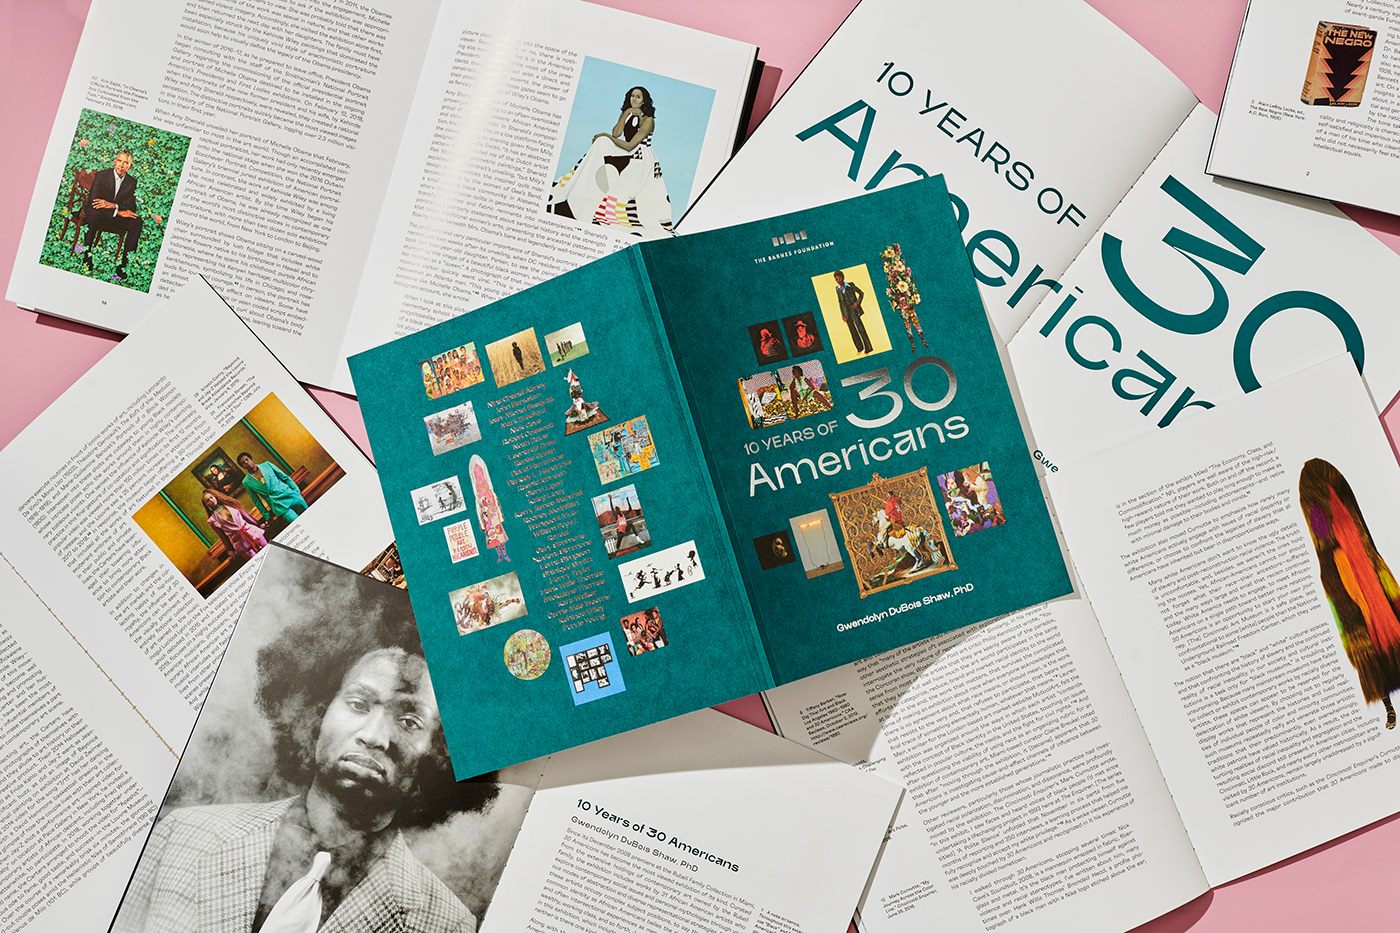 30 Americans art book exhibit Invitation museum bruta.types Grilli Type publication spread design